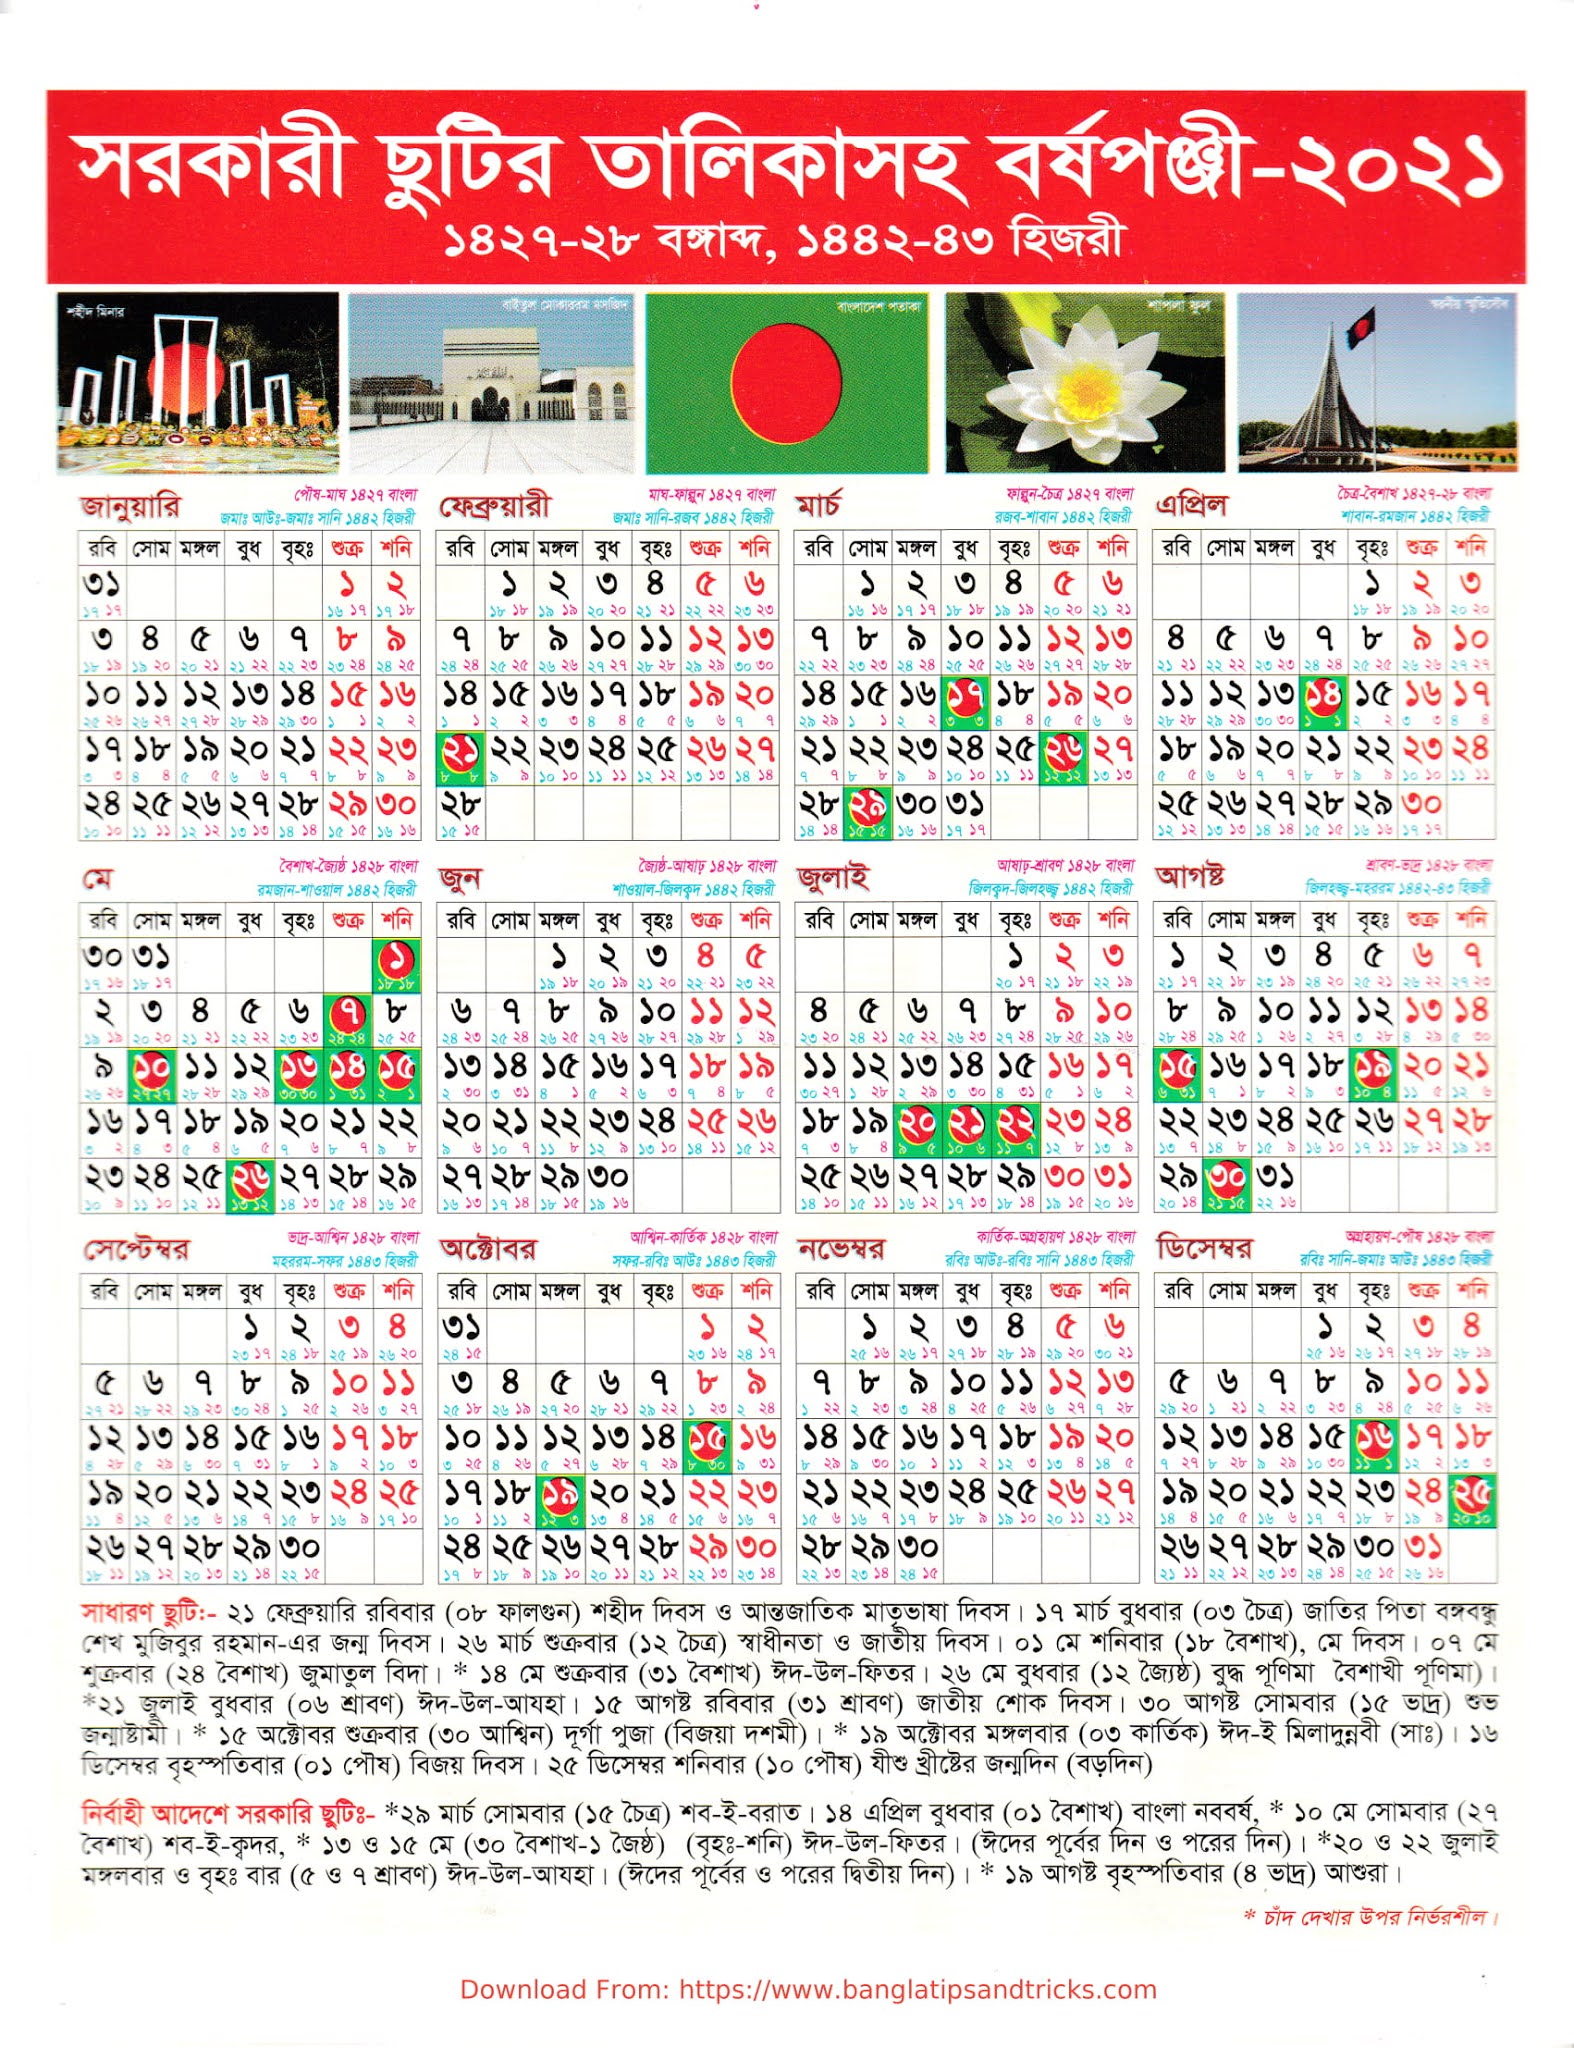 bangladesh-government-holiday-calendar-2018-bd-2016-pdf-vrogue